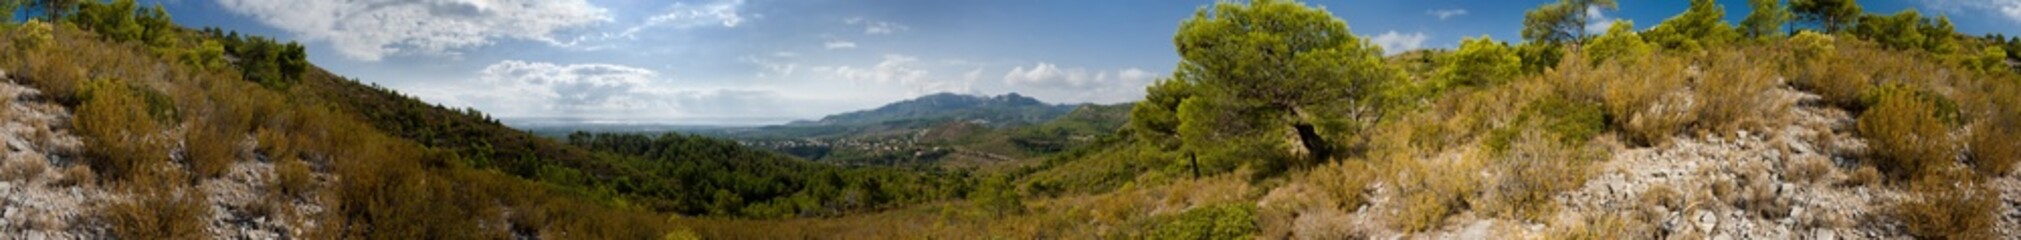 Mountain view in Spain. Full circular panorama